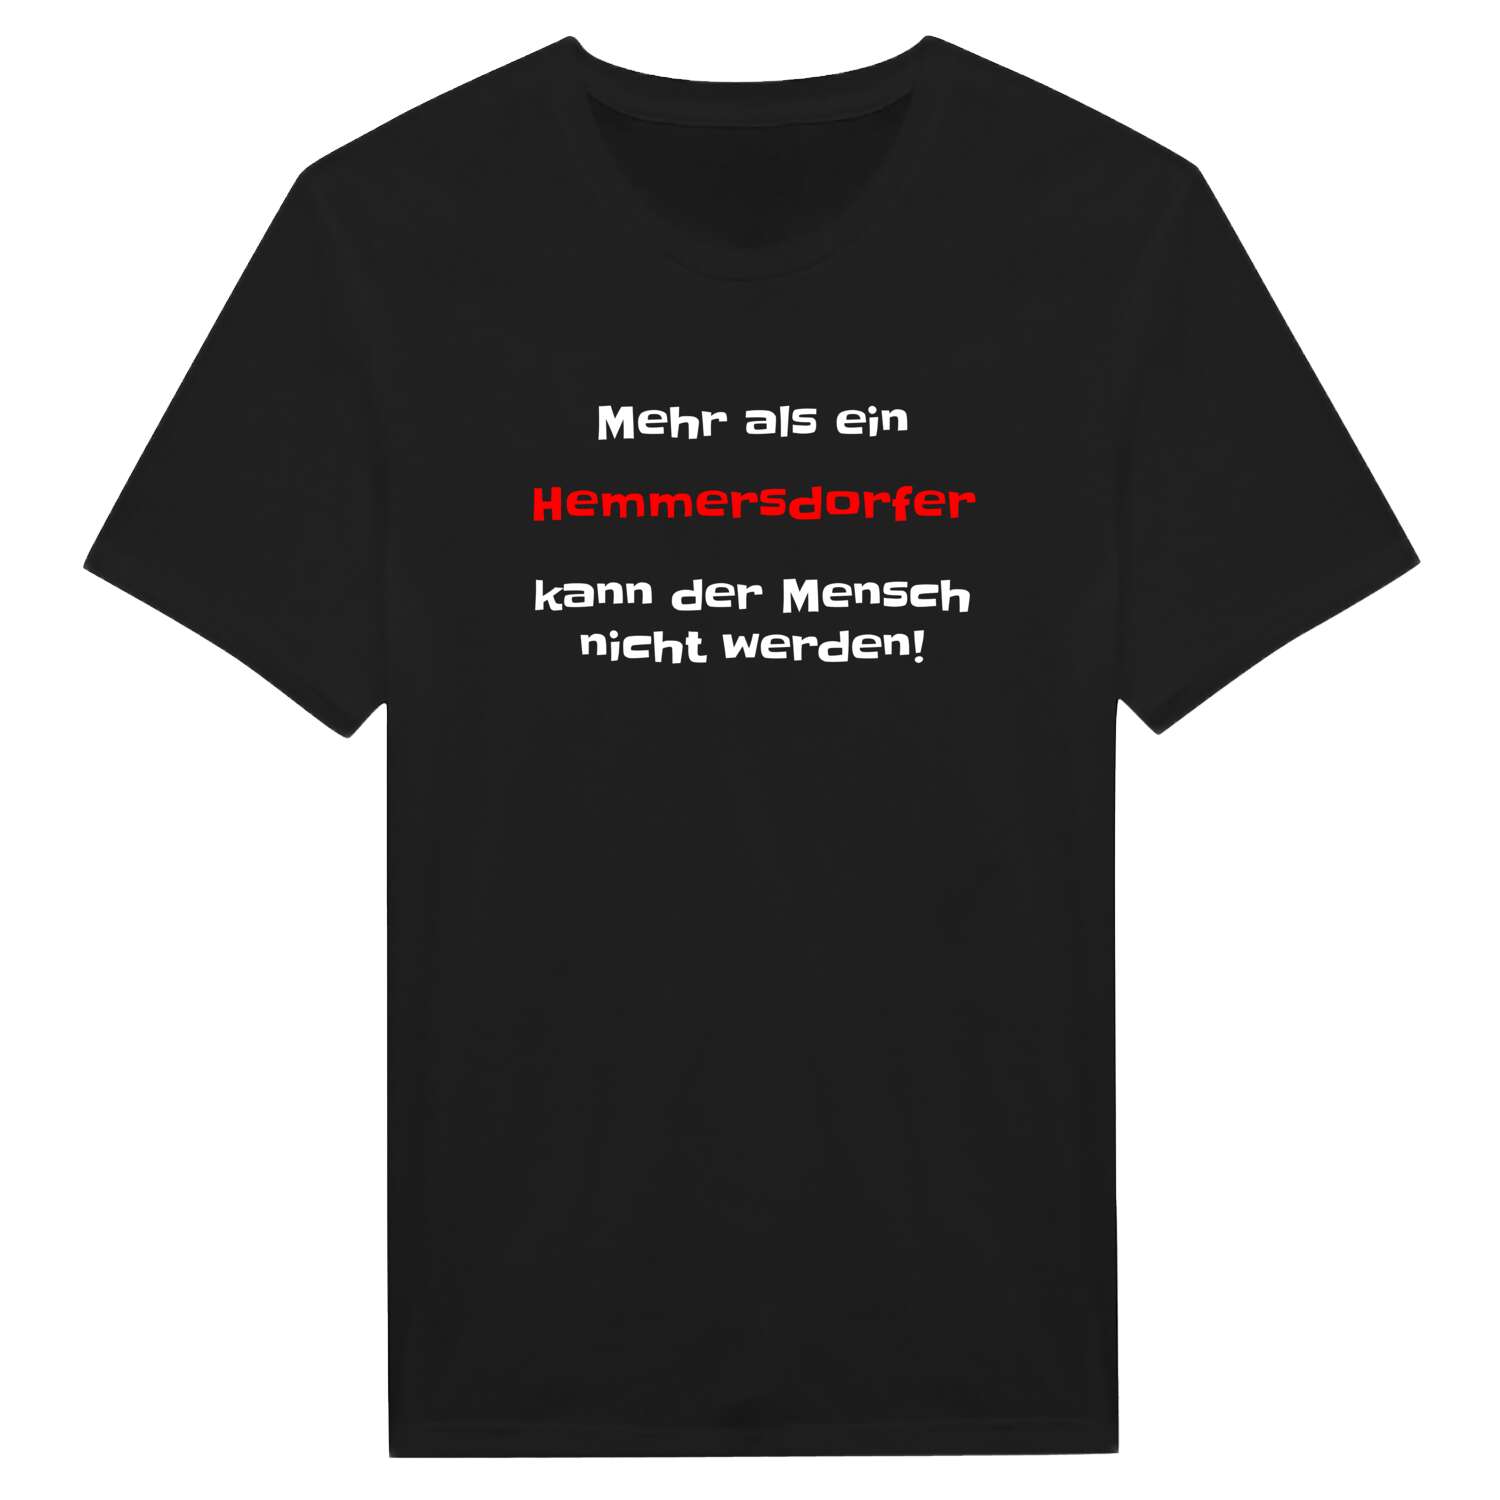 Hemmersdorf T-Shirt »Mehr als ein«